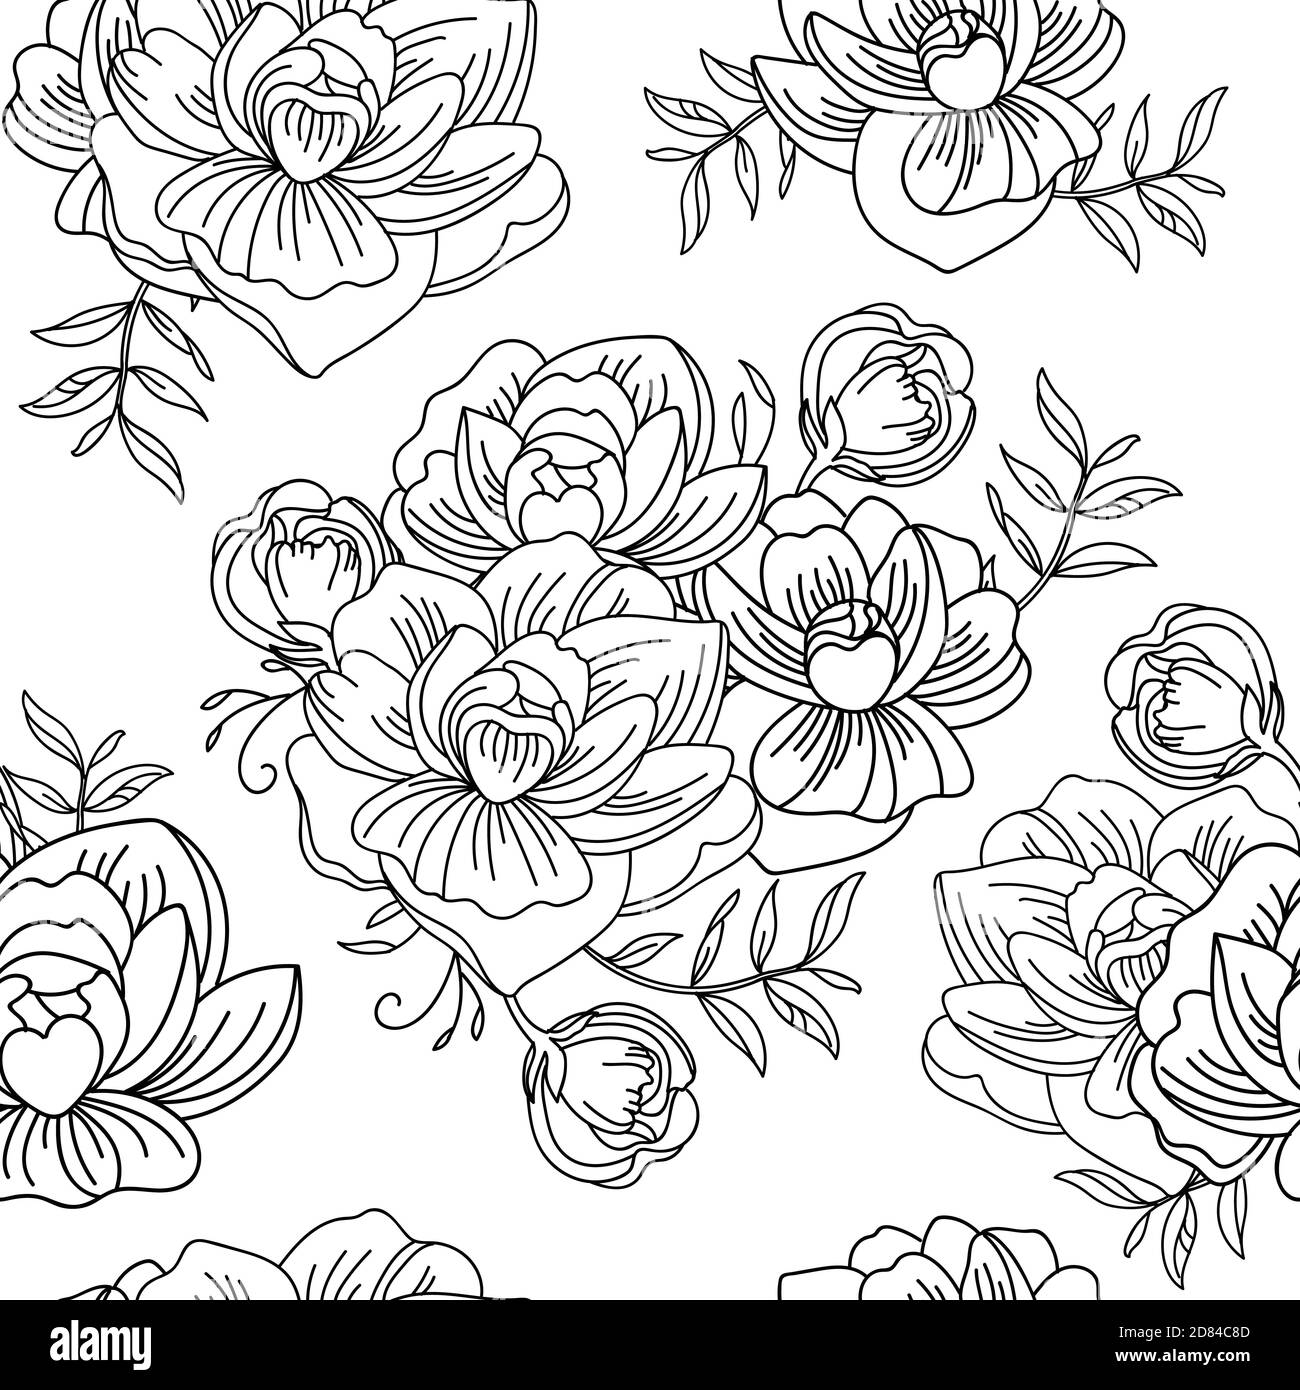 Nahtloses Muster mit Blumenstrauß aus Pfingstrosen. Monochromer Hintergrund für die Erstellung von Textilien, Tapeten, Papier, Hochzeitseinladung, Design, Druck. Vect Stock Vektor